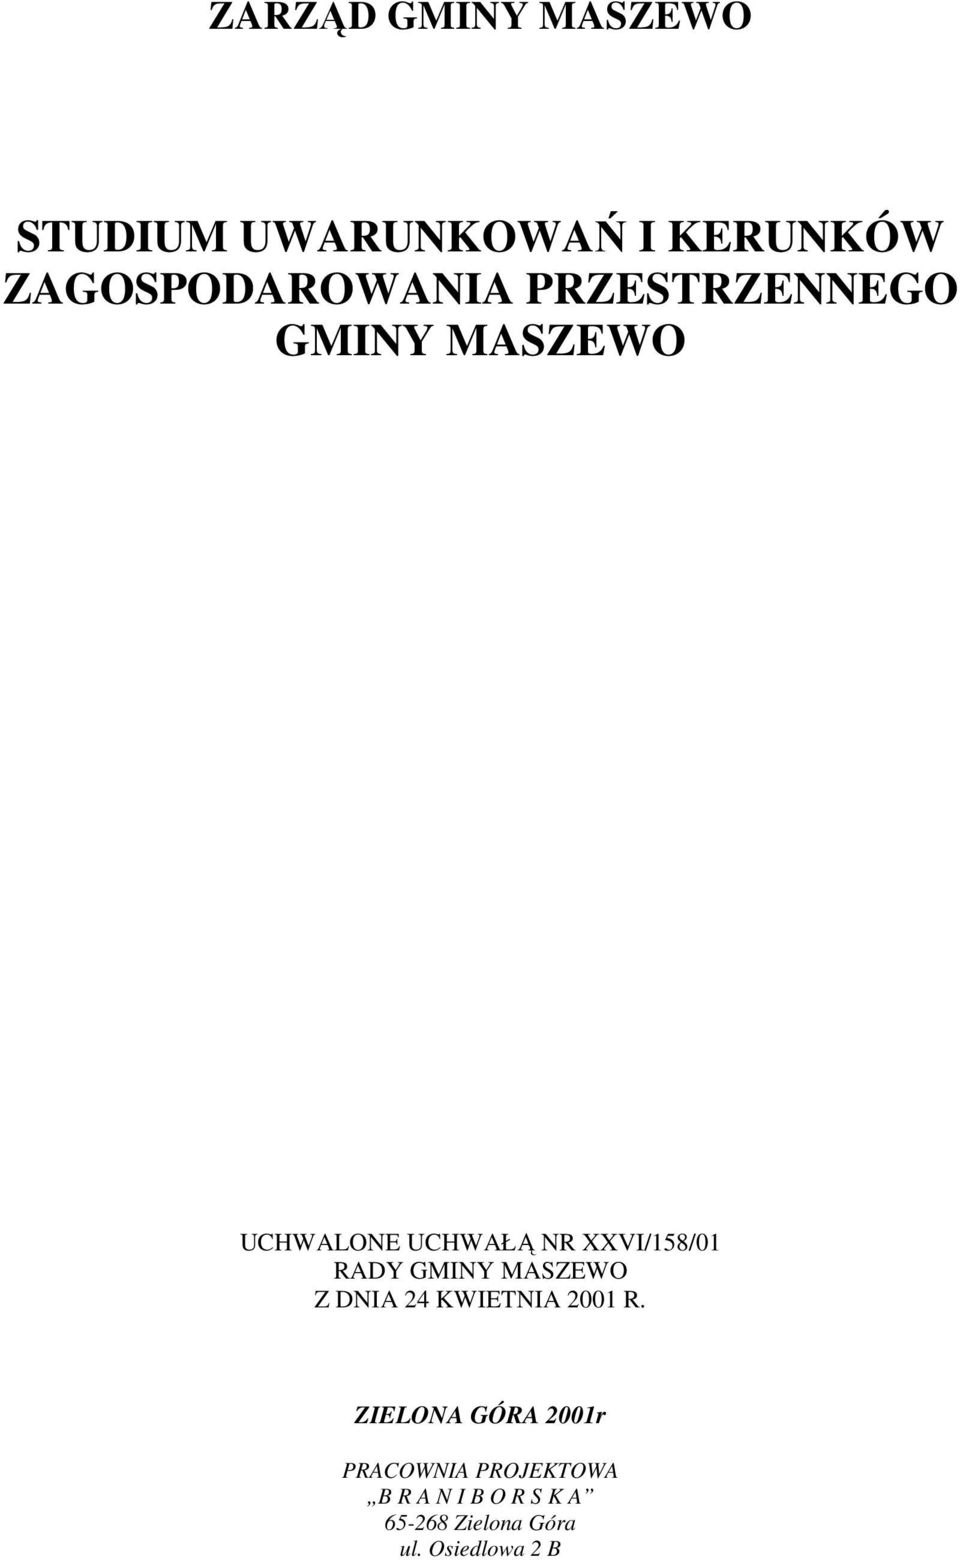 GMINY MASZEWO Z DNIA 24 KWIETNIA 2001 R.